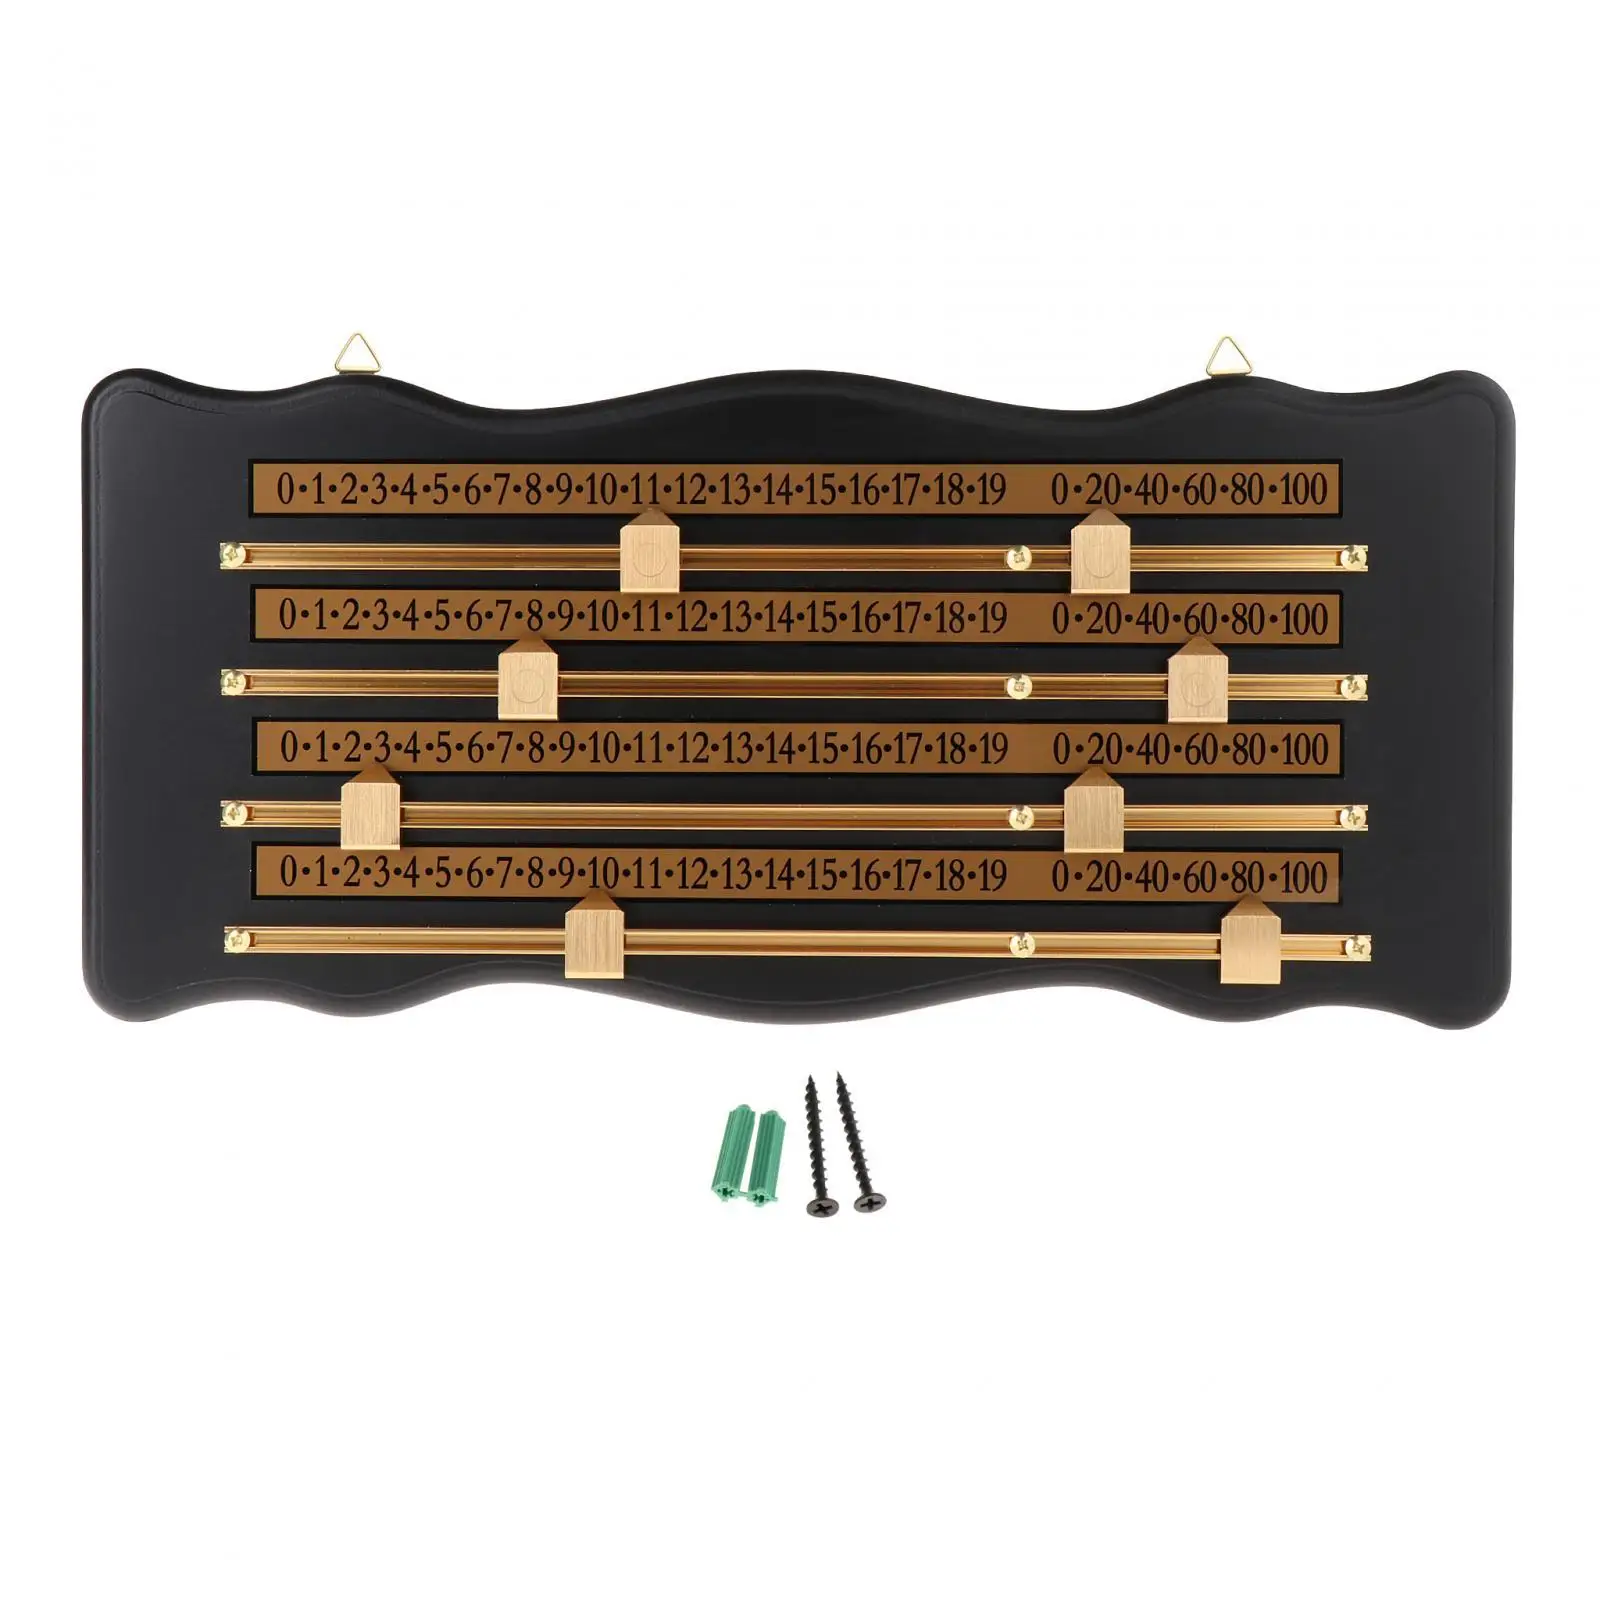 Shuffleboard Scoreboard Billiard Score Board Club Accessories Wooden Durable Snooker Game Device Scoring Board Score Keeper